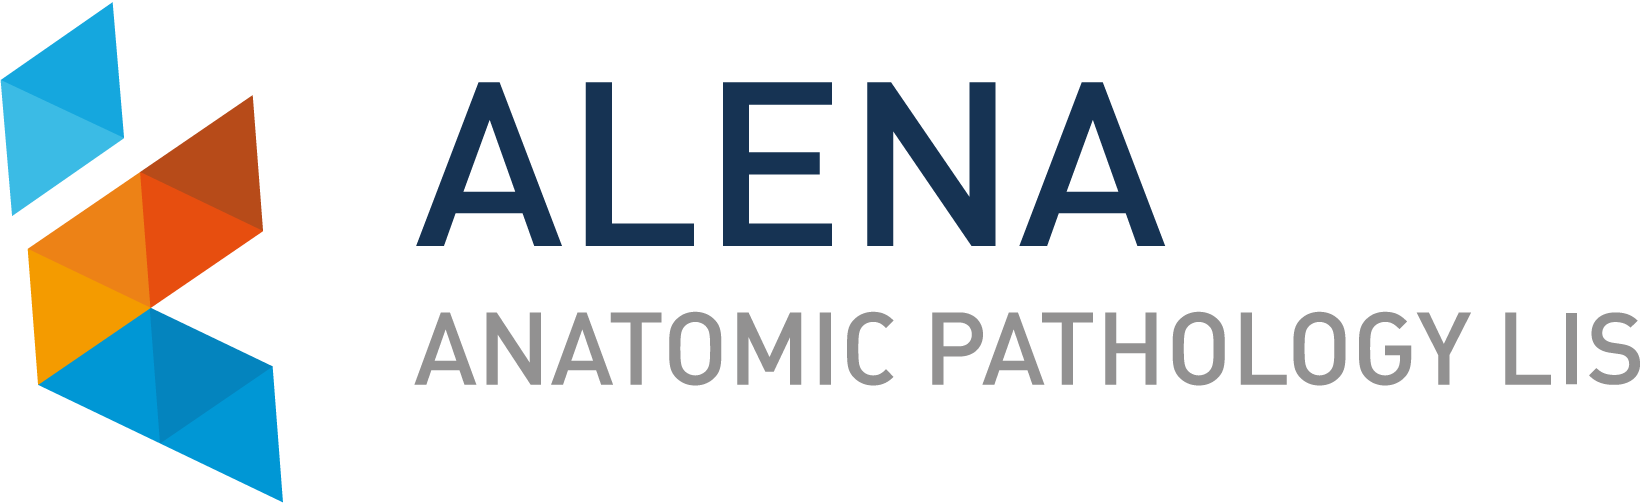 logo_AlenA_web